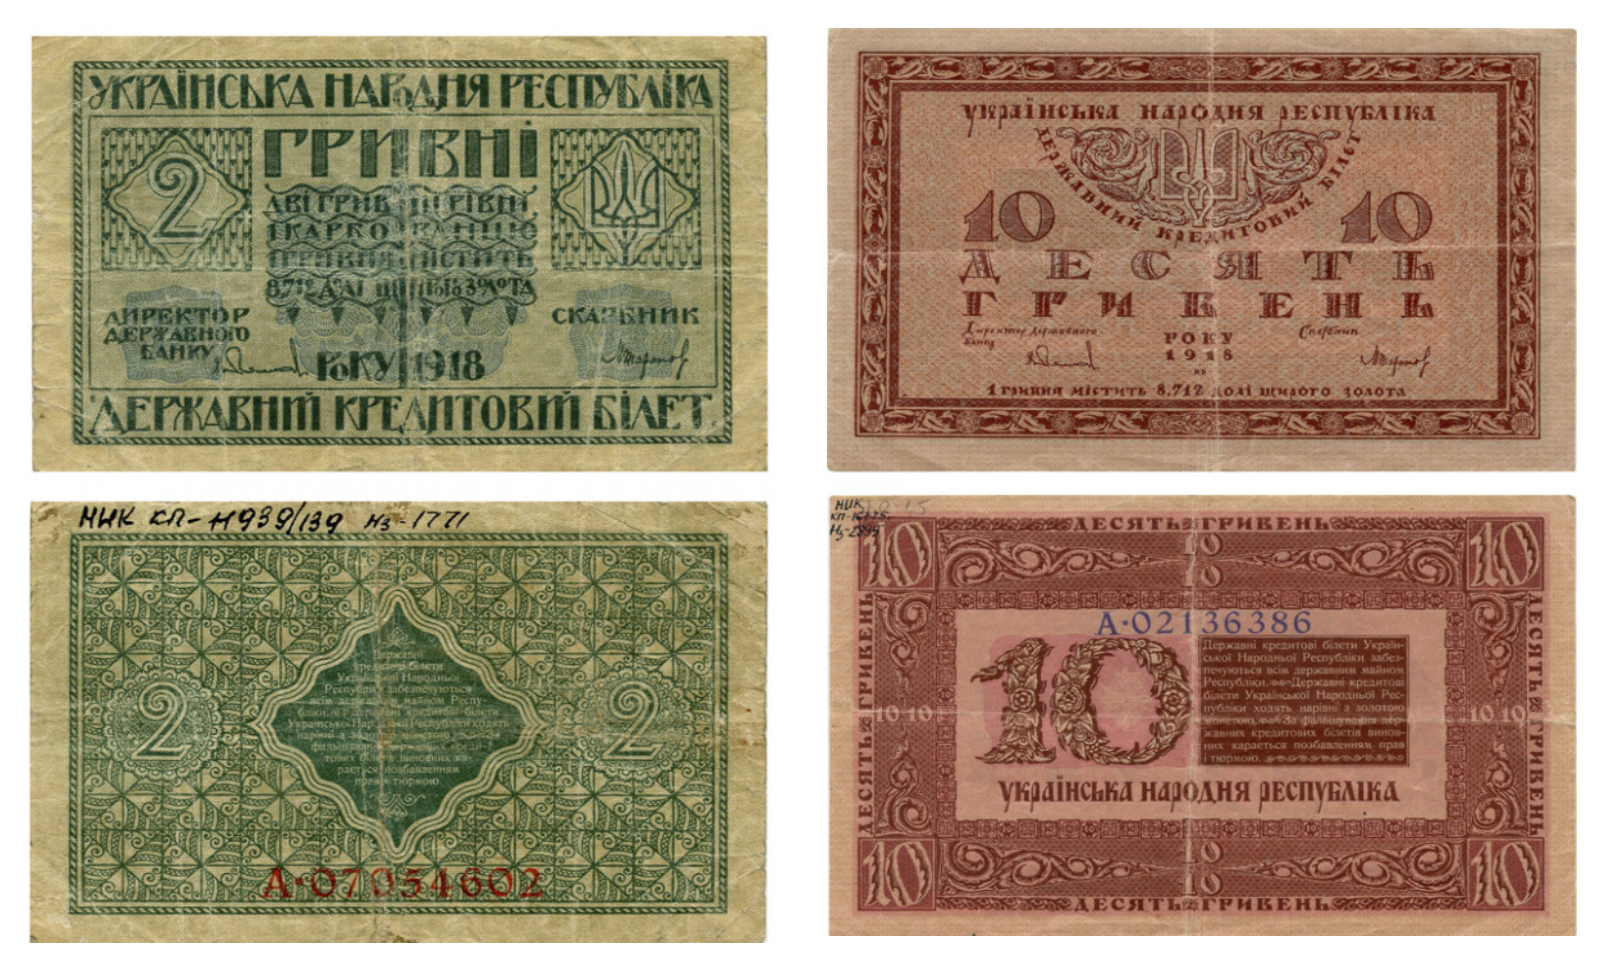 Банкнота номиналом 2 гривны (автор проекта В. Кричевский) и Банкнота номиналом 10 гривен (автор проекта Г. Нарбут) 